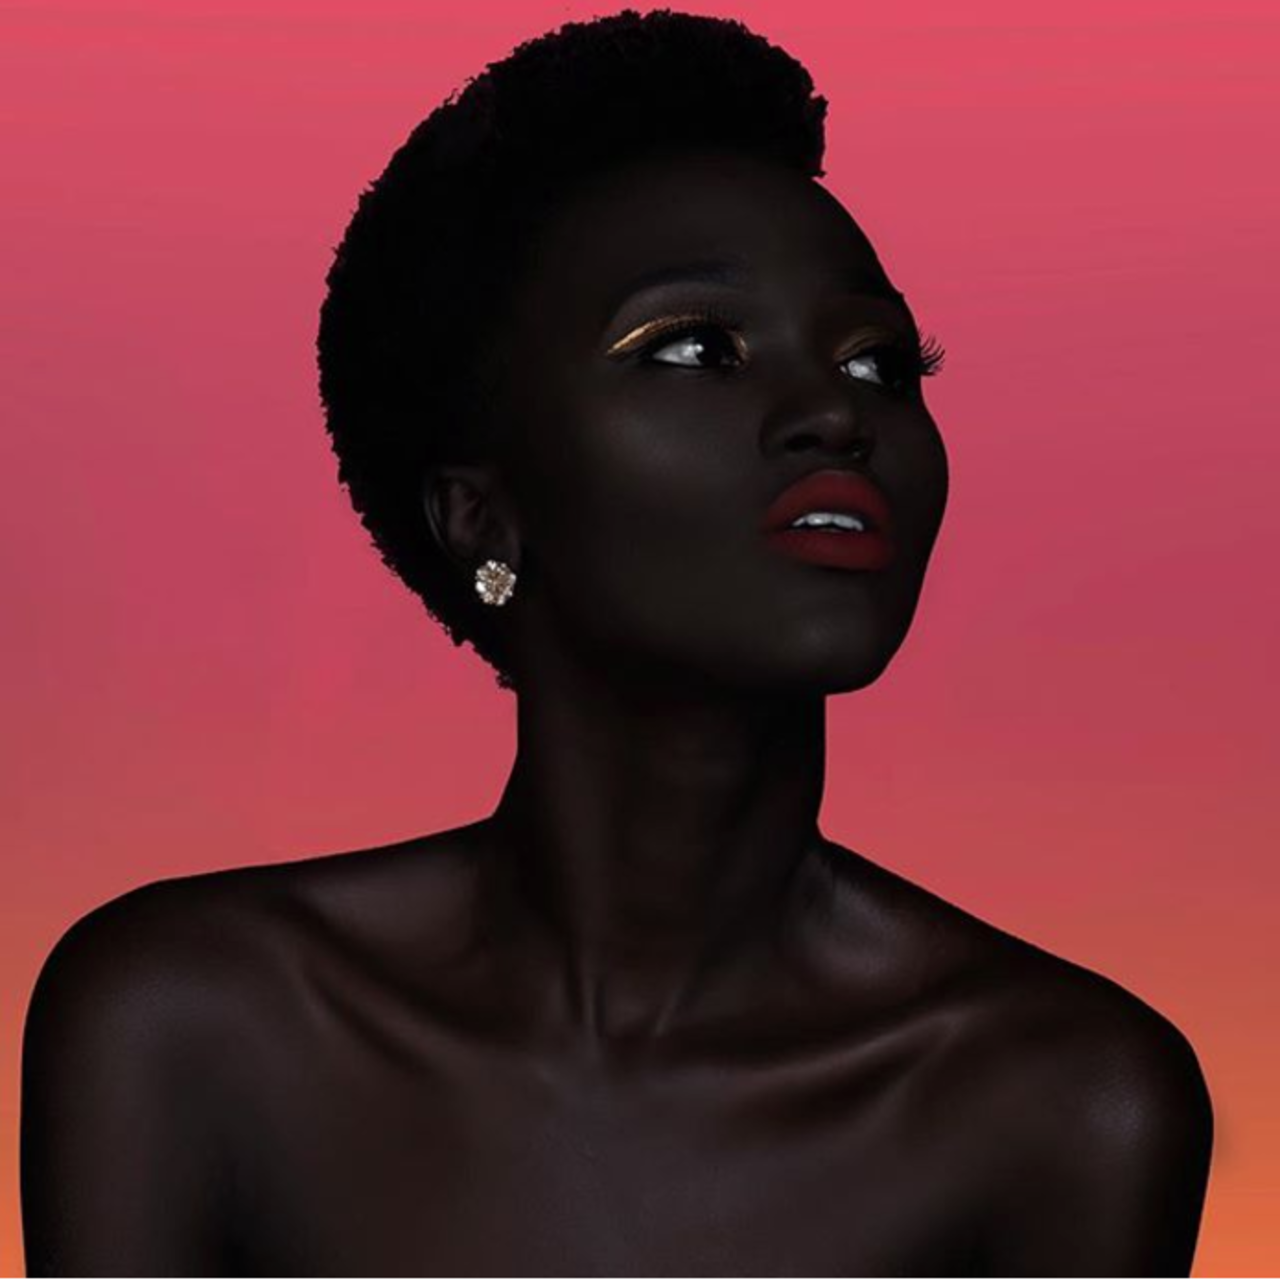 Негритянка плачет. Няким Гатвеч. Королева тьмы - Ньяким Гатвех - модель из Южного Судана. Няким Гатвех - "Королева тьмы" из Южного Судана. Ньяким Гатвеч модель.